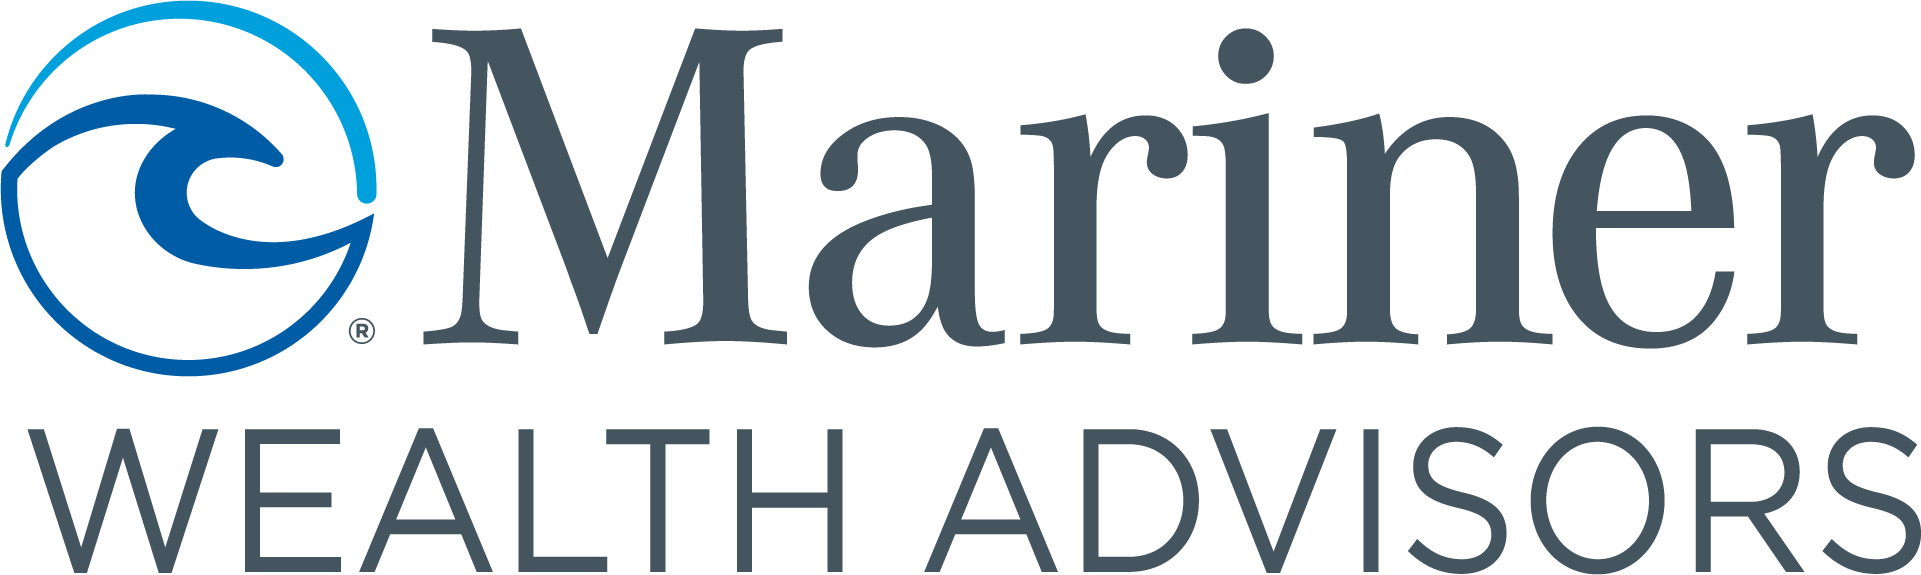 Mariner Wealth Advisors Logo